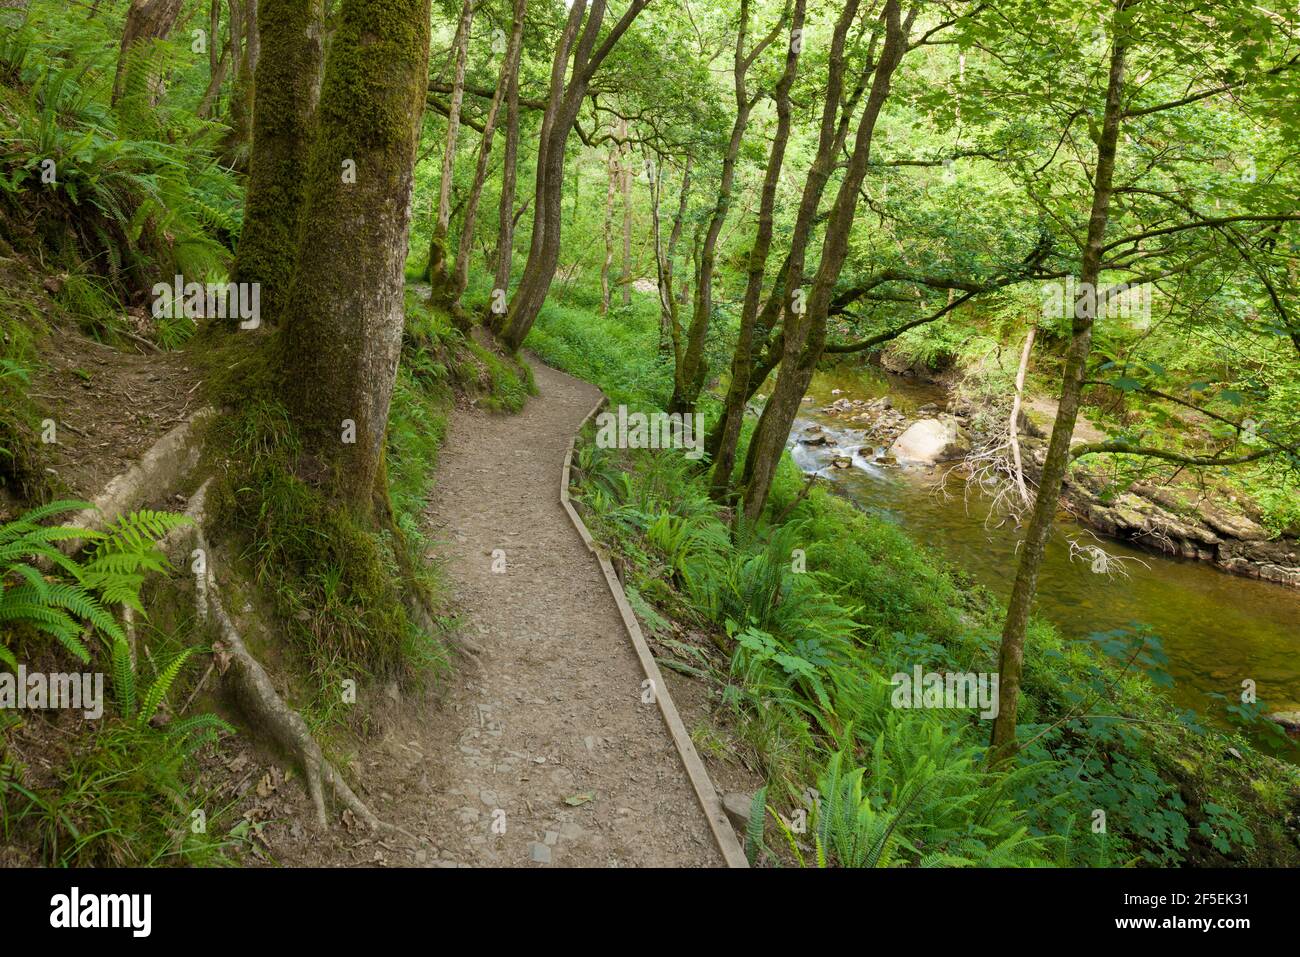 Un sentier le long de la rivière Neath dans la forêt dans le parc national de Bannau Brycheiniog (Brecon Beacons), Powys, pays de Galles. Banque D'Images